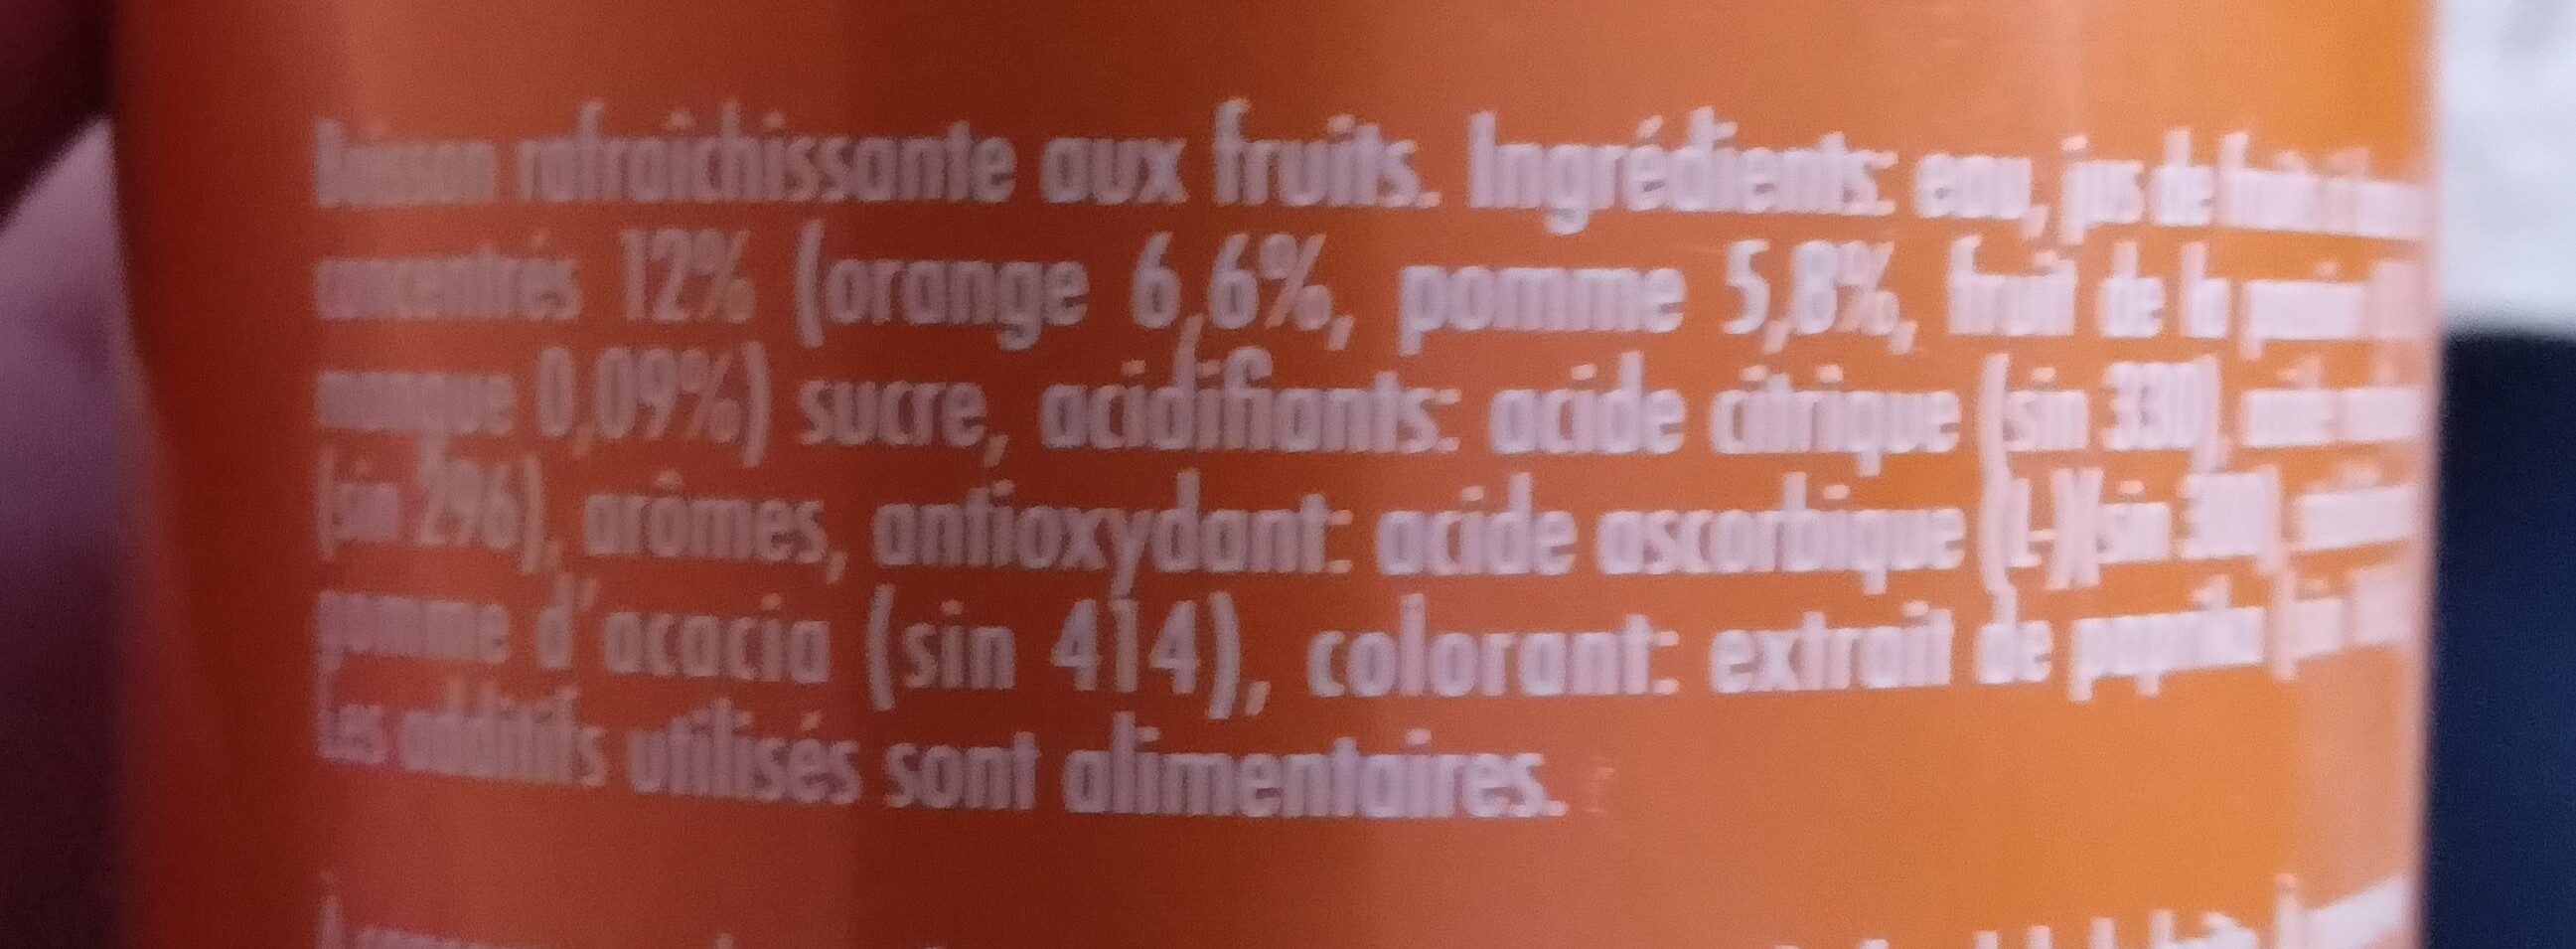 Banga Tropical - Ingrediënten - fr